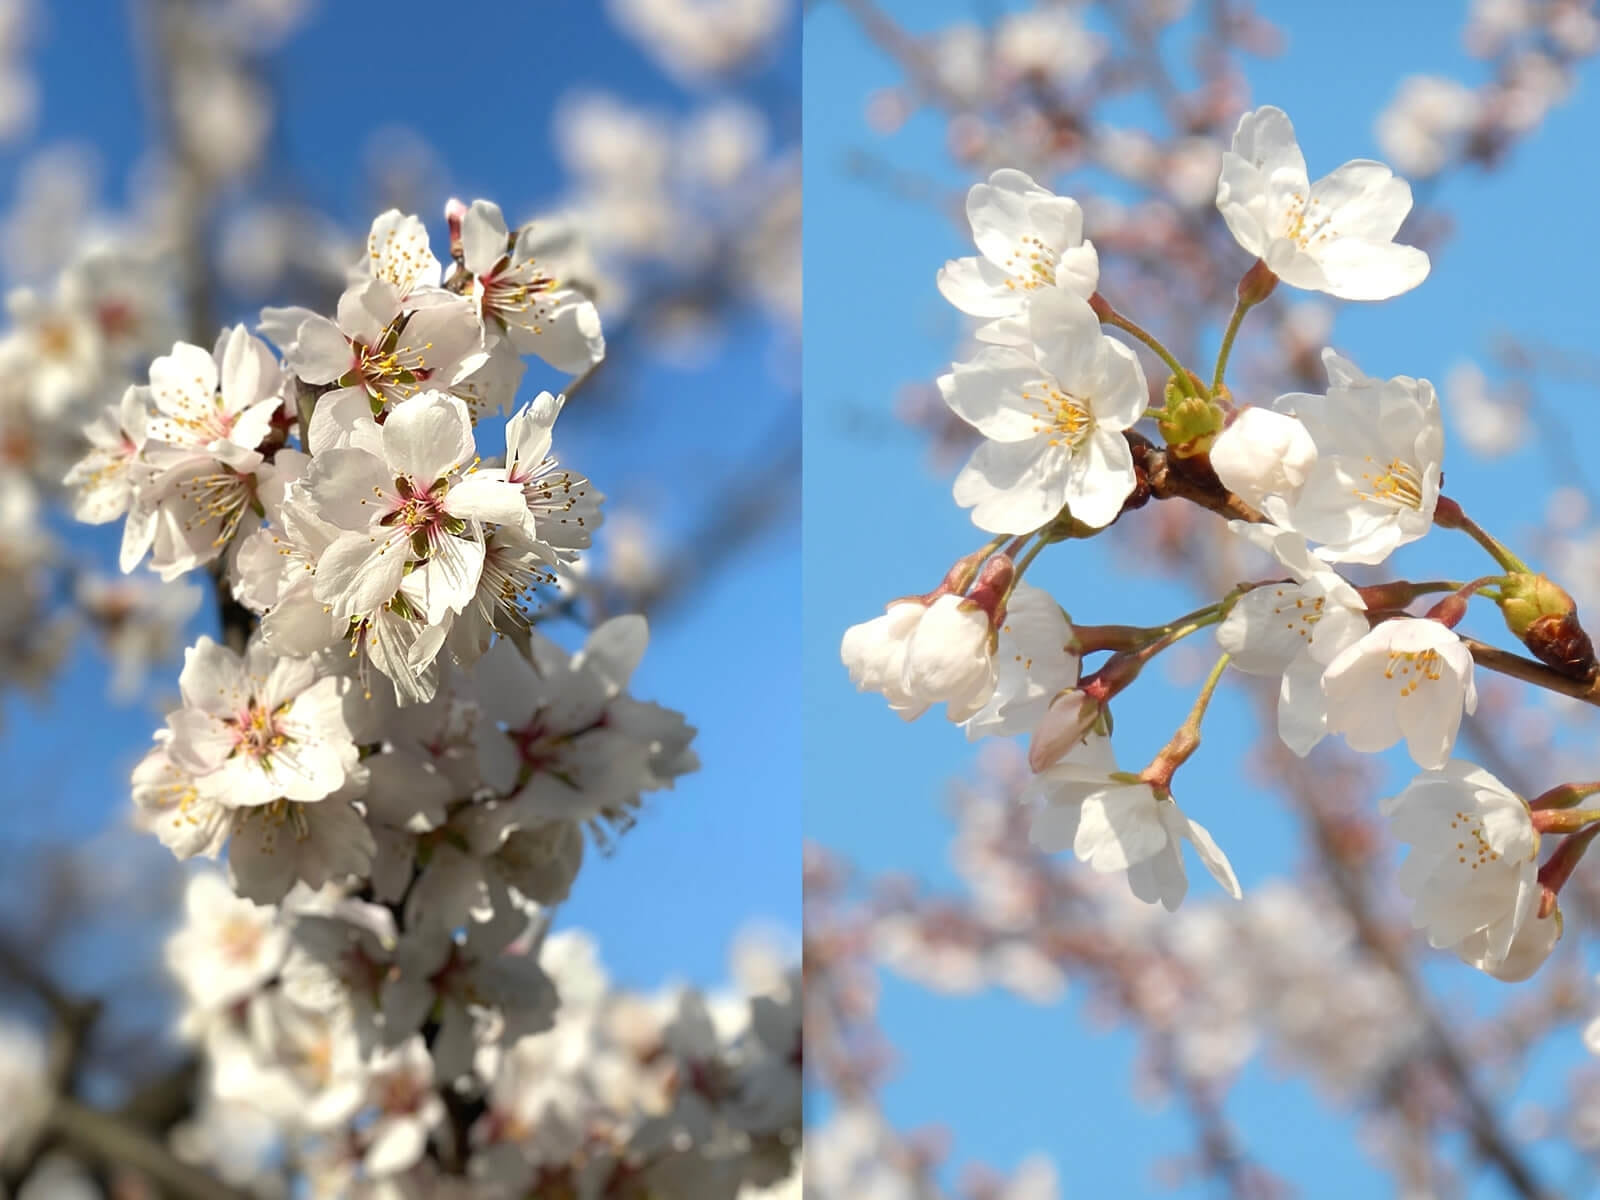 そっくりな花 アーモンド と 桜 の違いや簡単な見分け方とは ナッツの情報サイト Ton S Cafe トンカフェ